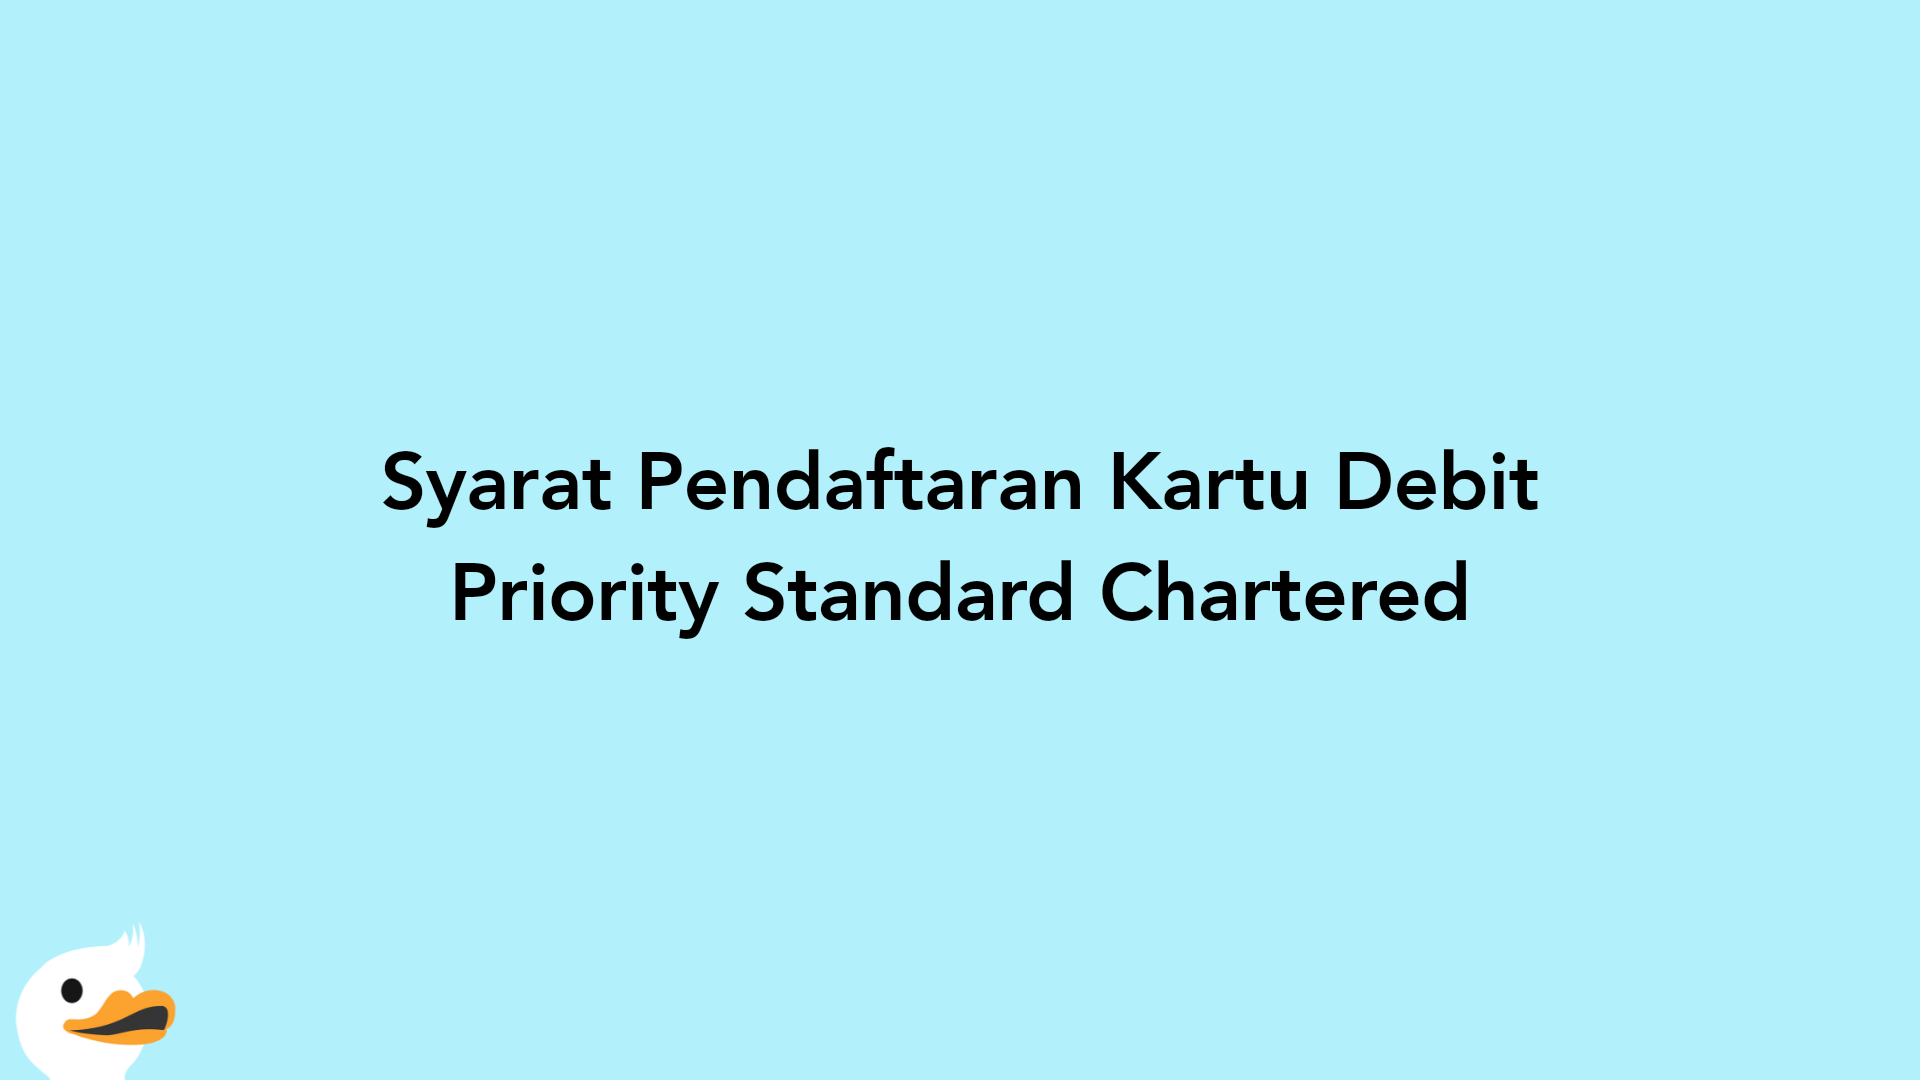 Syarat Pendaftaran Kartu Debit Priority Standard Chartered